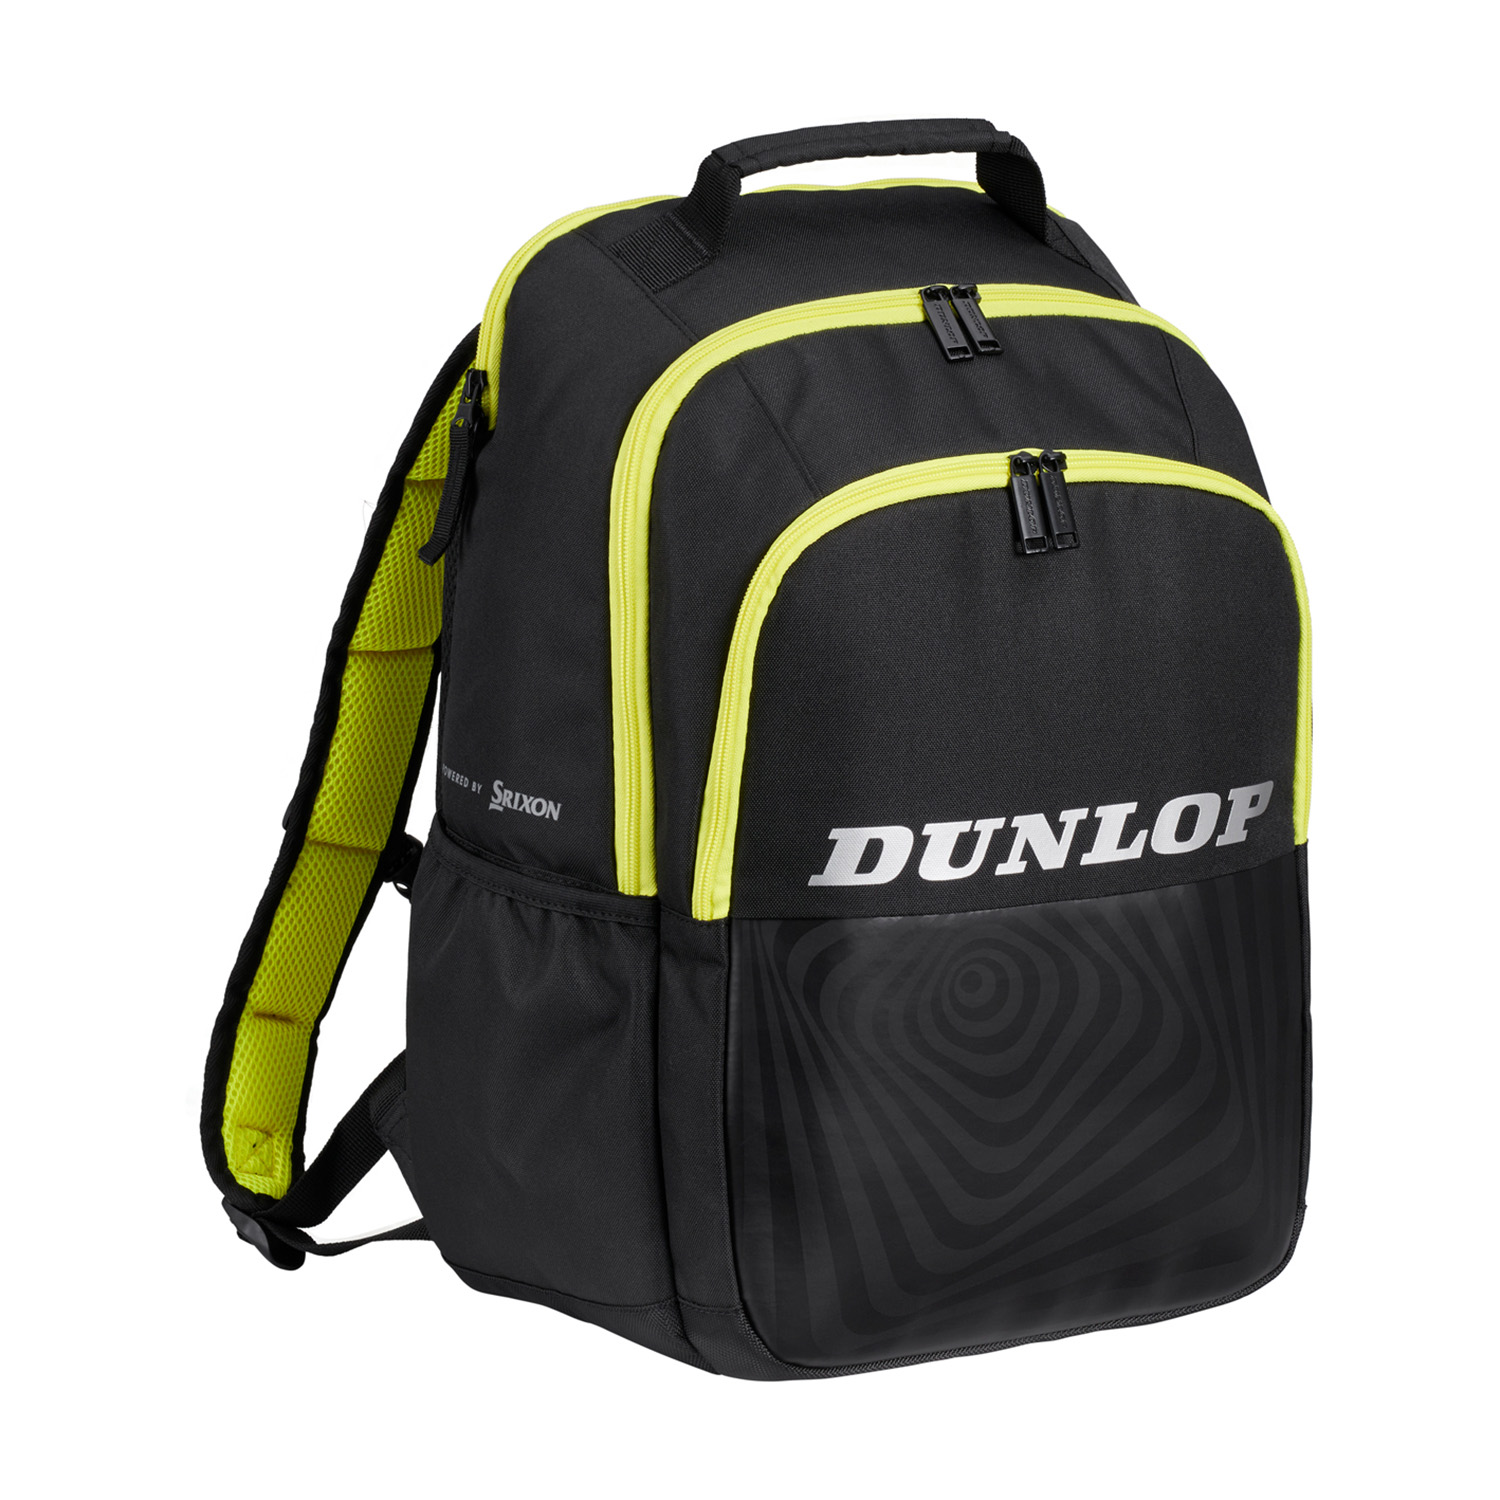 Dunlop SX Performance Mochila - Black/Yellow